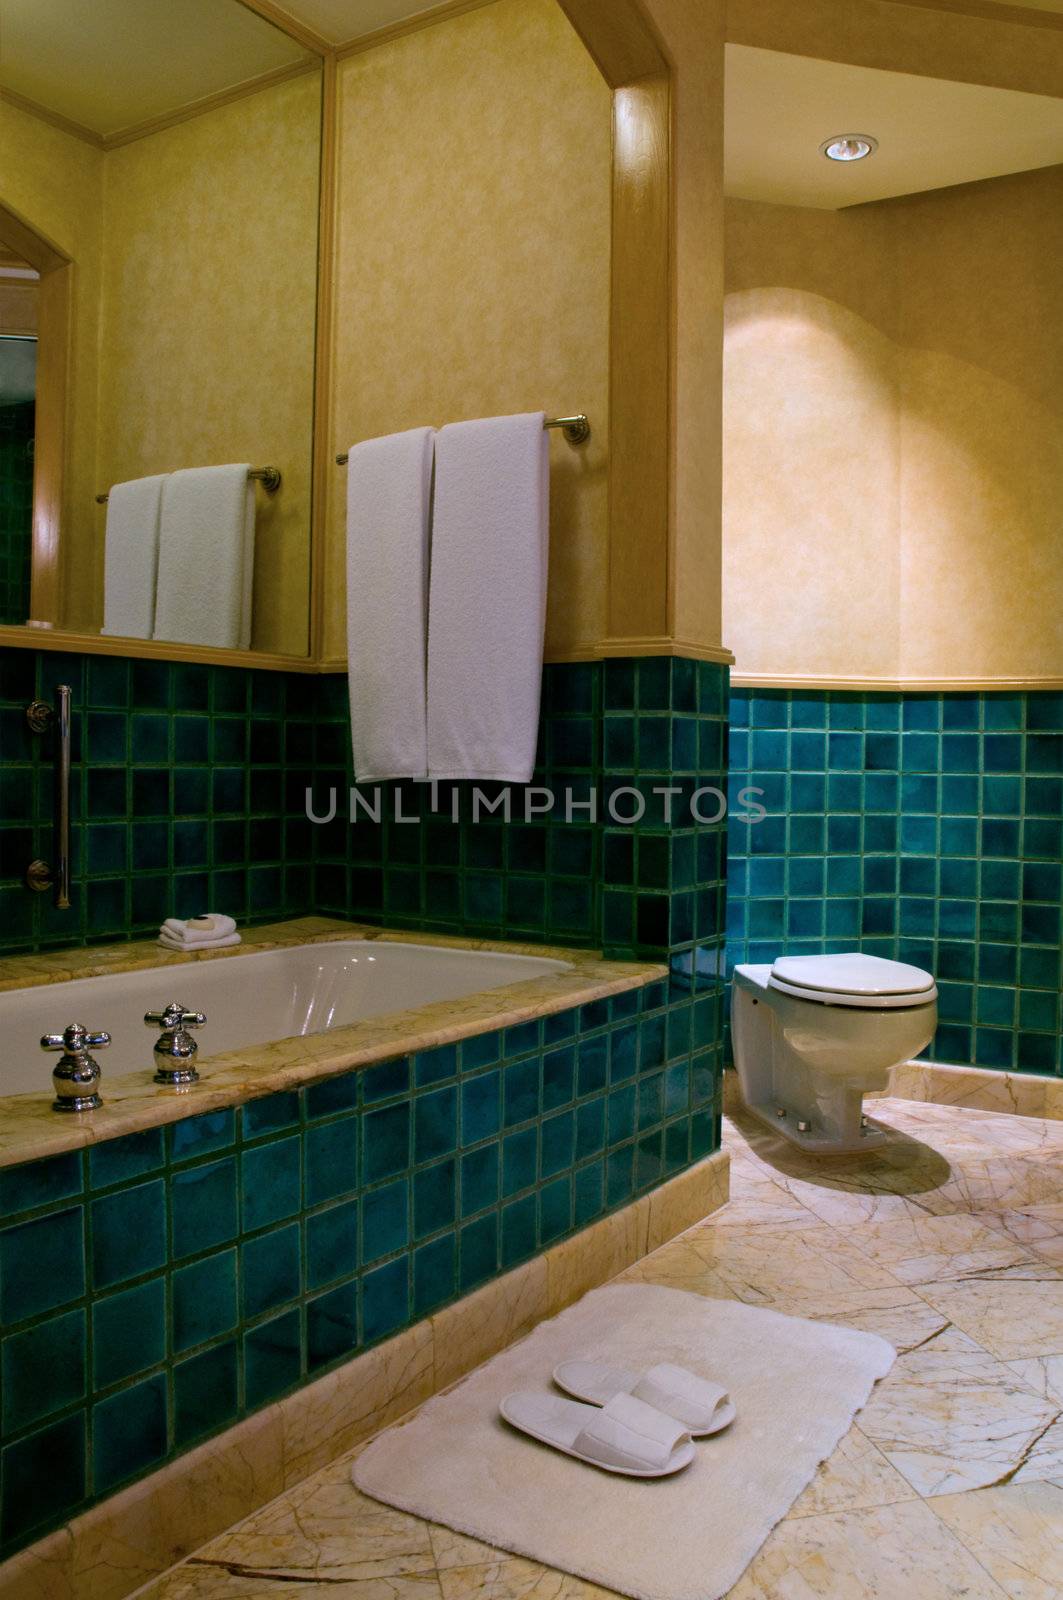 Bathroom of a elegant 5 star luxury hotel by 3523Studio